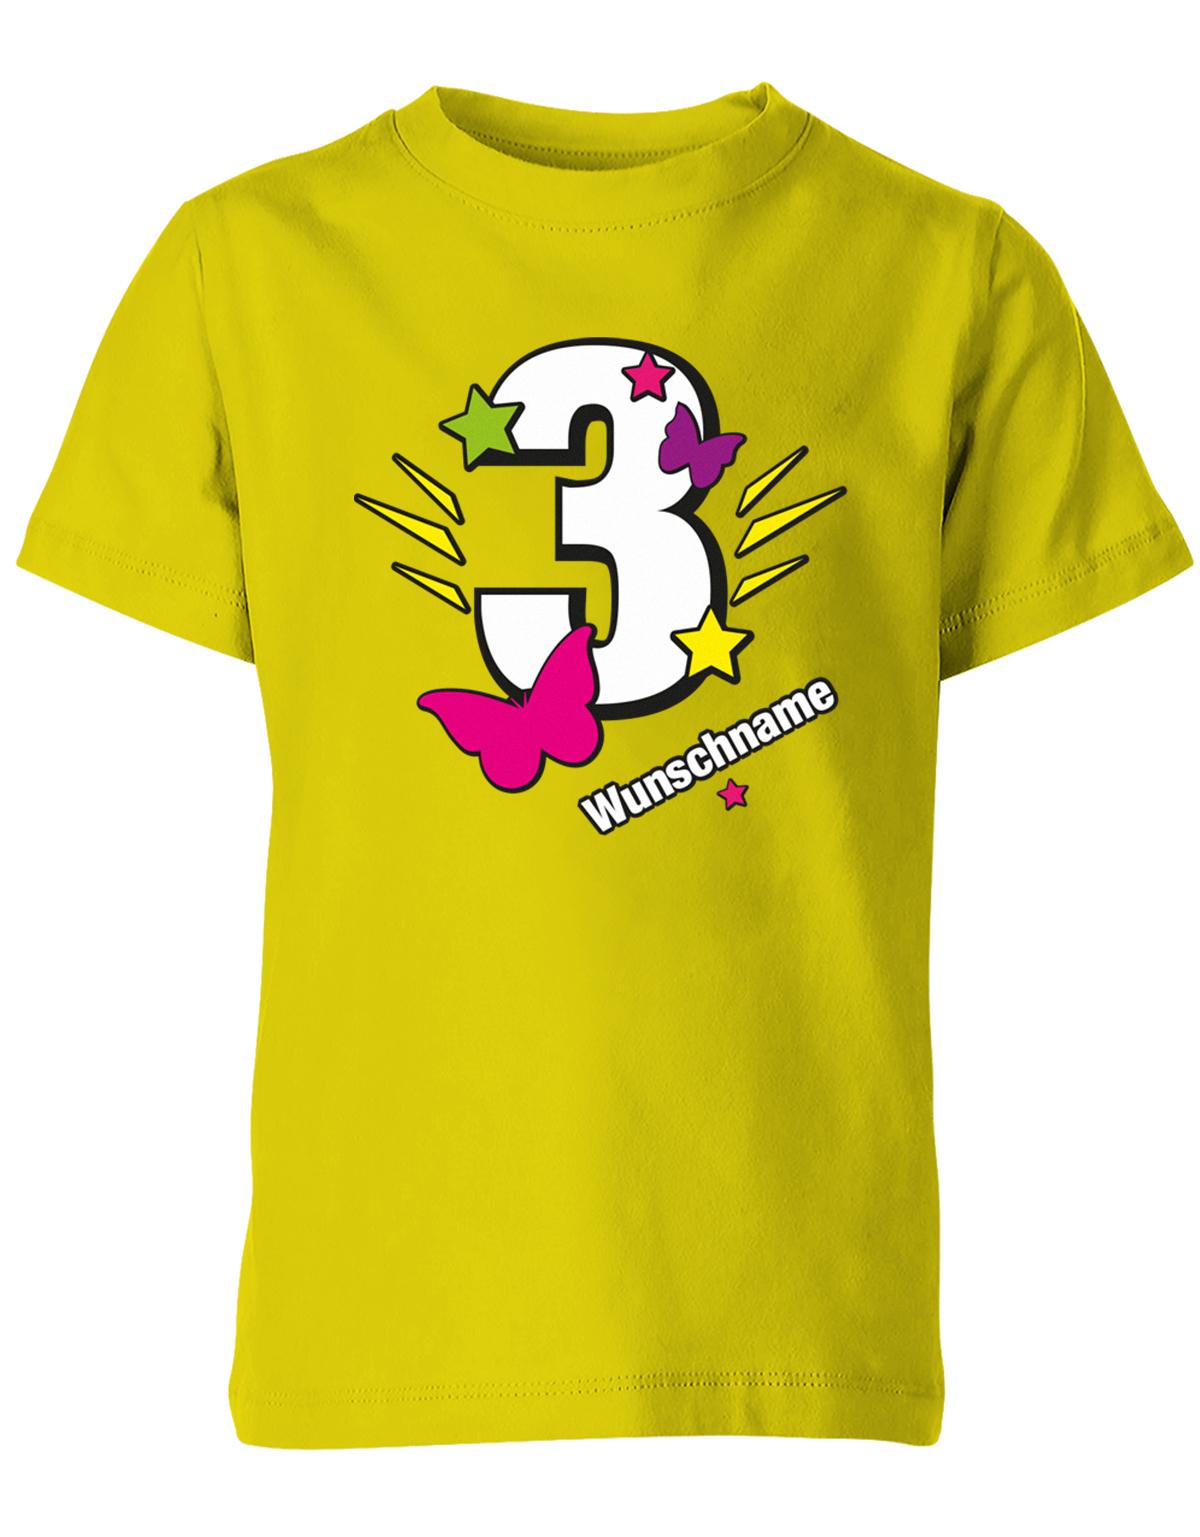 schmetterling-sterne-3-geburtstag-wunschname-kinder-shirt-gelb